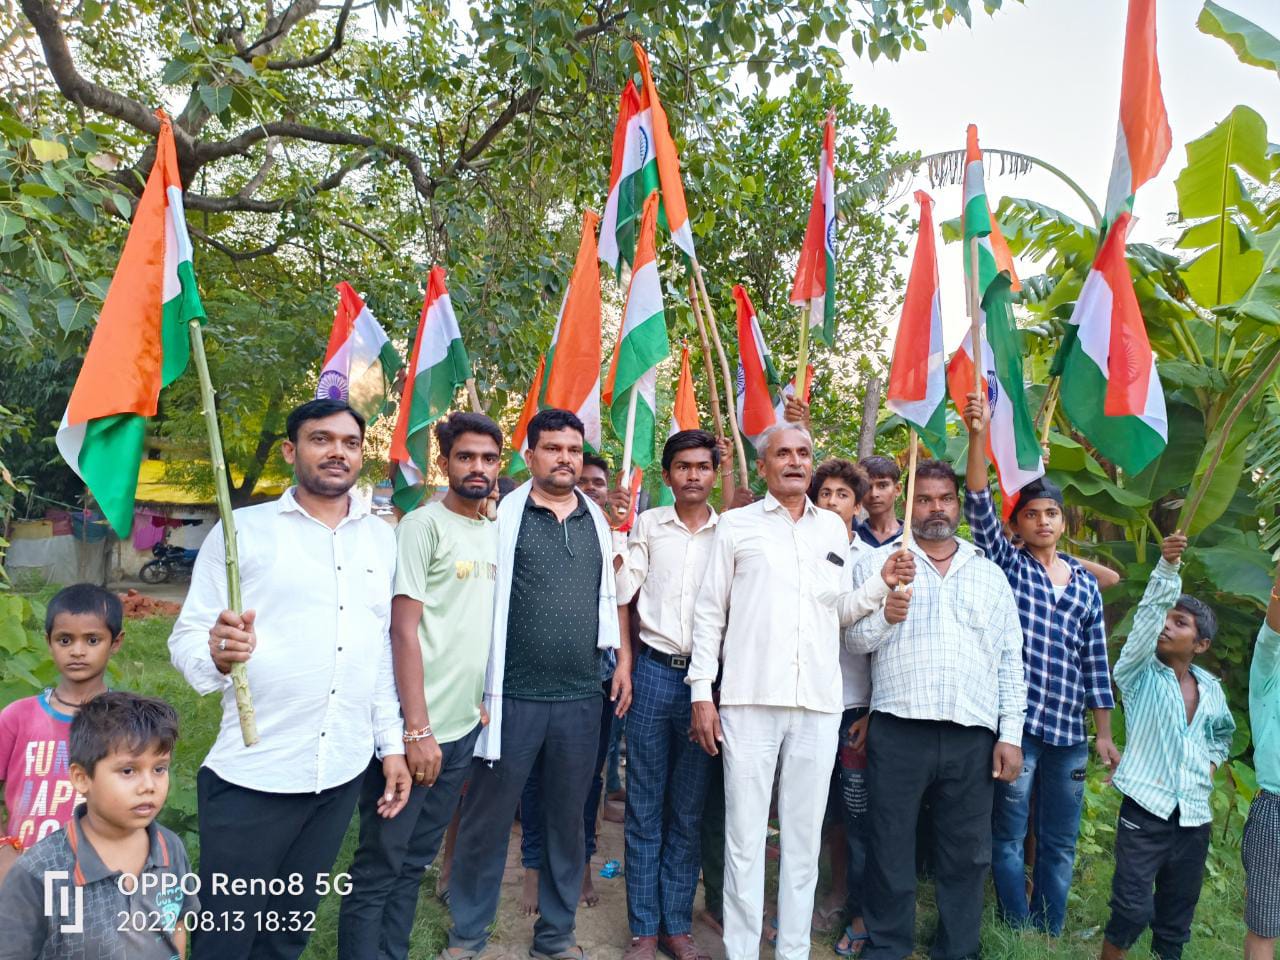 इटवा तहसील के कमसार गांव में आजादी के अमृत महोत्सव के उपलक्ष्य में निकाली गई पैदल तिरंगा रैली | New India Times